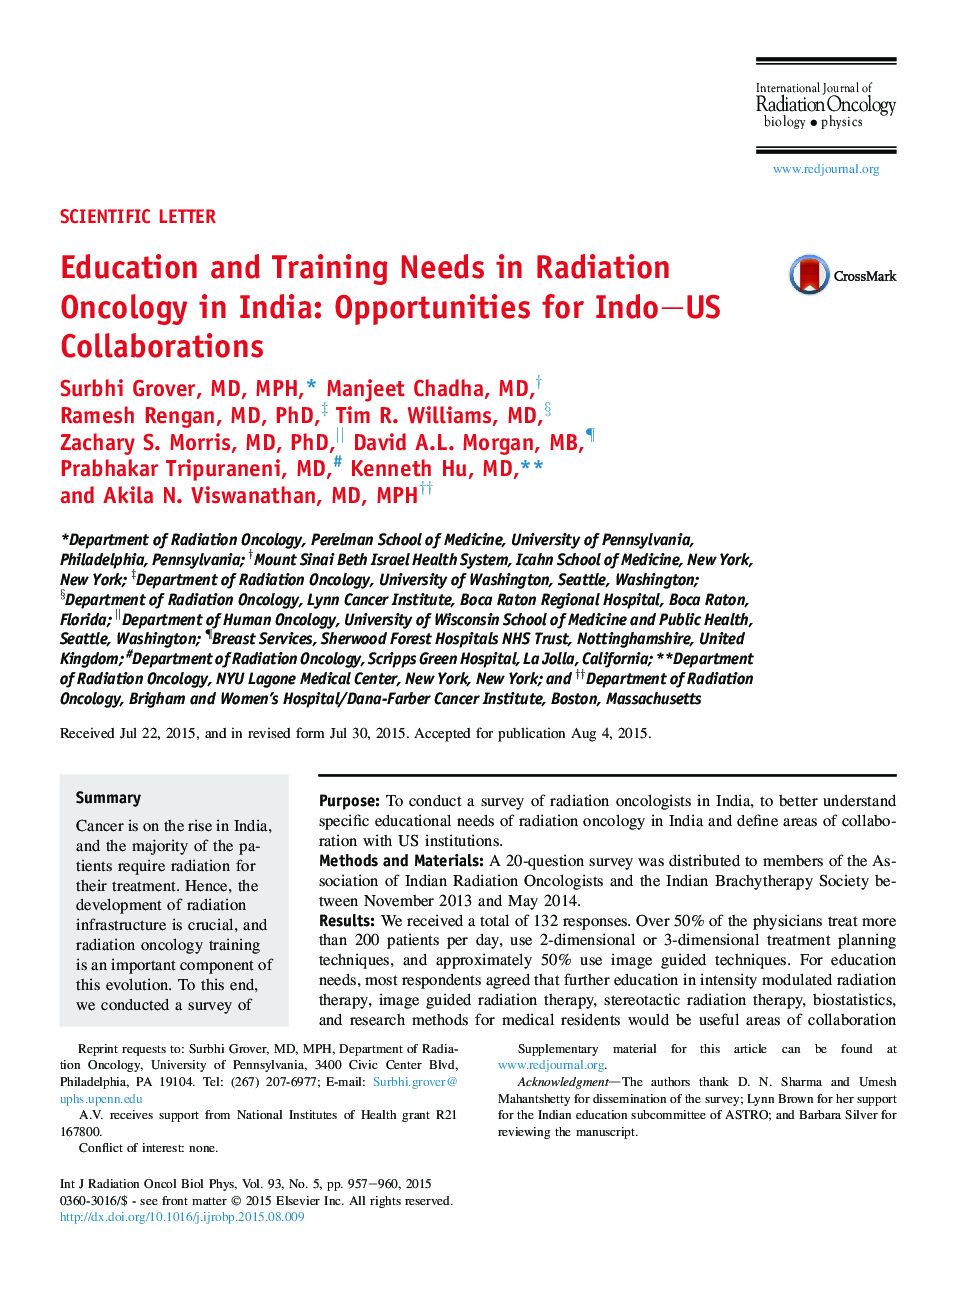 نیازهای آموزشی و آموزش در علم رادیولوژی در هند: فرصت های همکاری های هند و آمریکا 